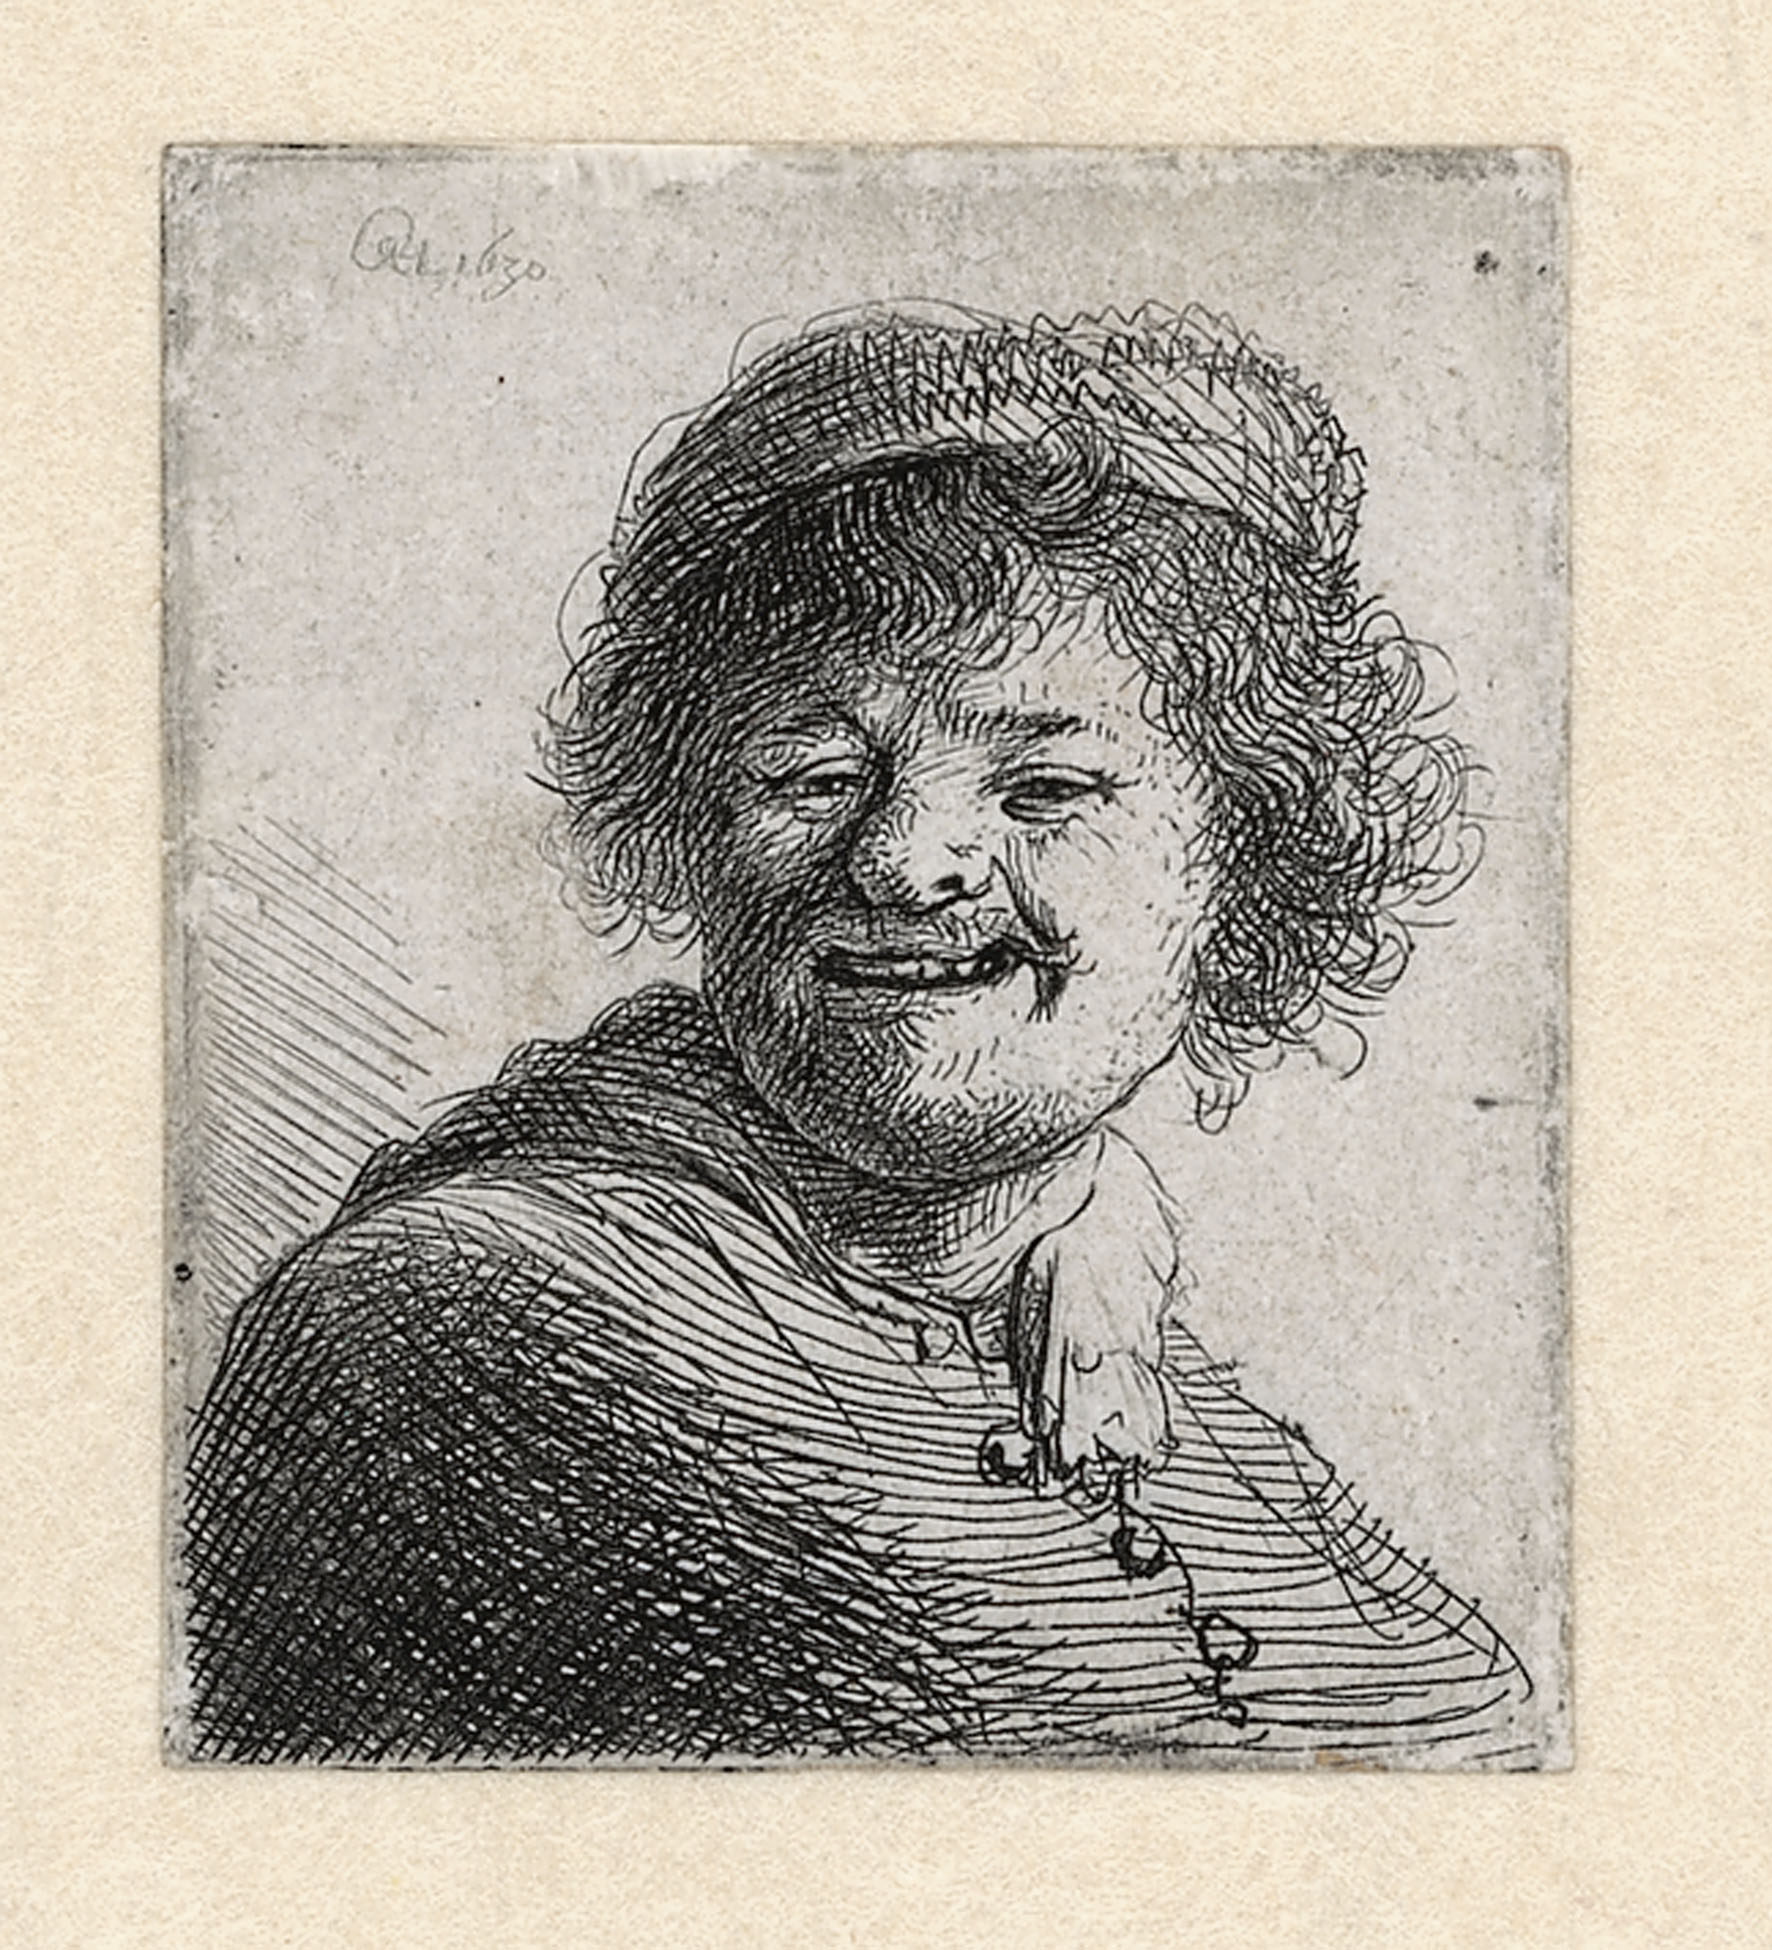 戴著帽子的自畫像，笑臉 by Rembrandt van Rijn - 1630 - 50 x 45 cm 